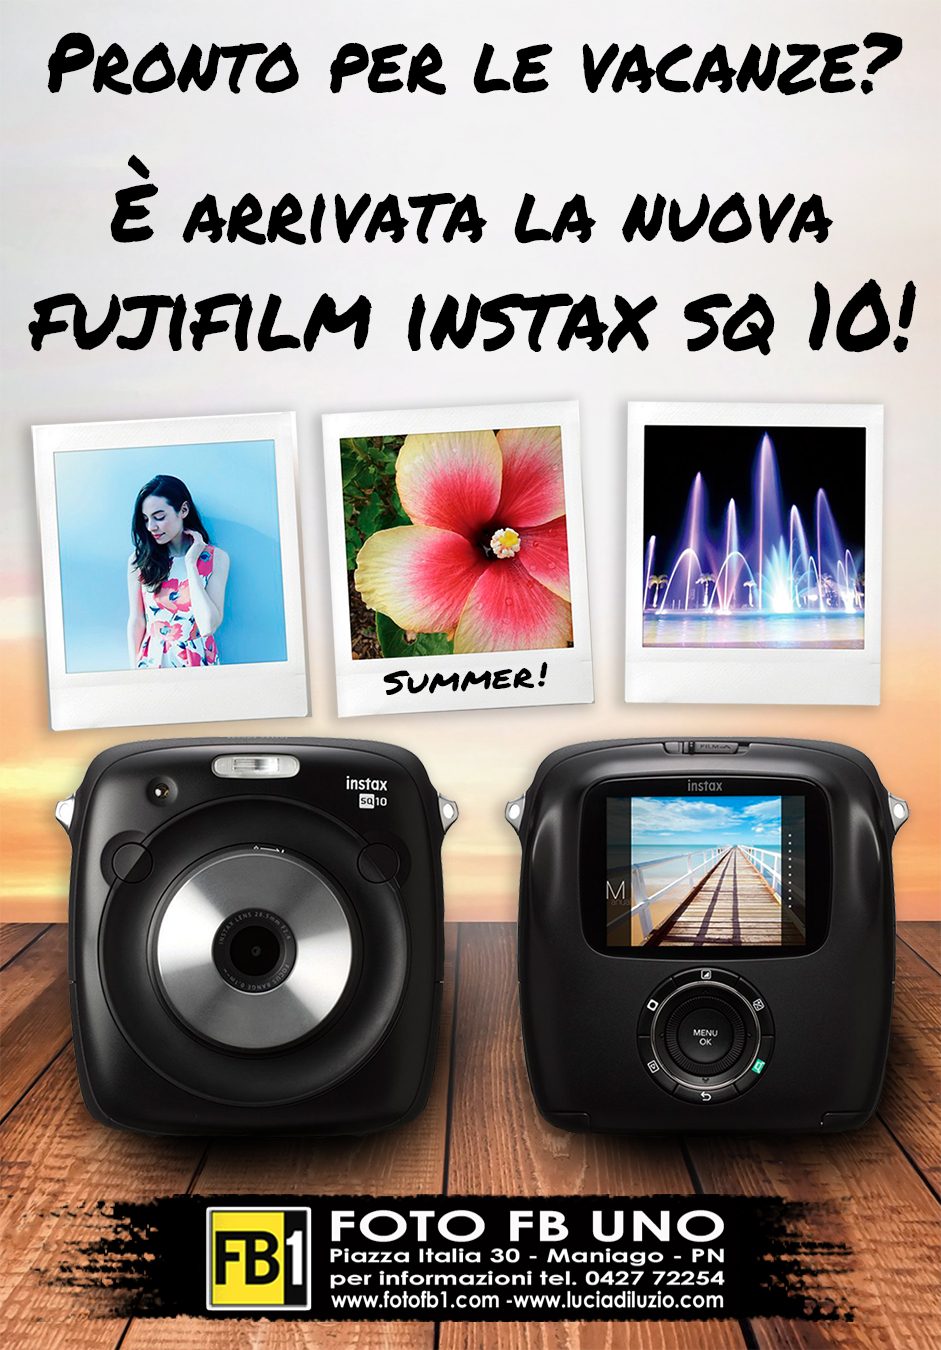 È arrivata la nuova Fujifilm Instax SQ 10